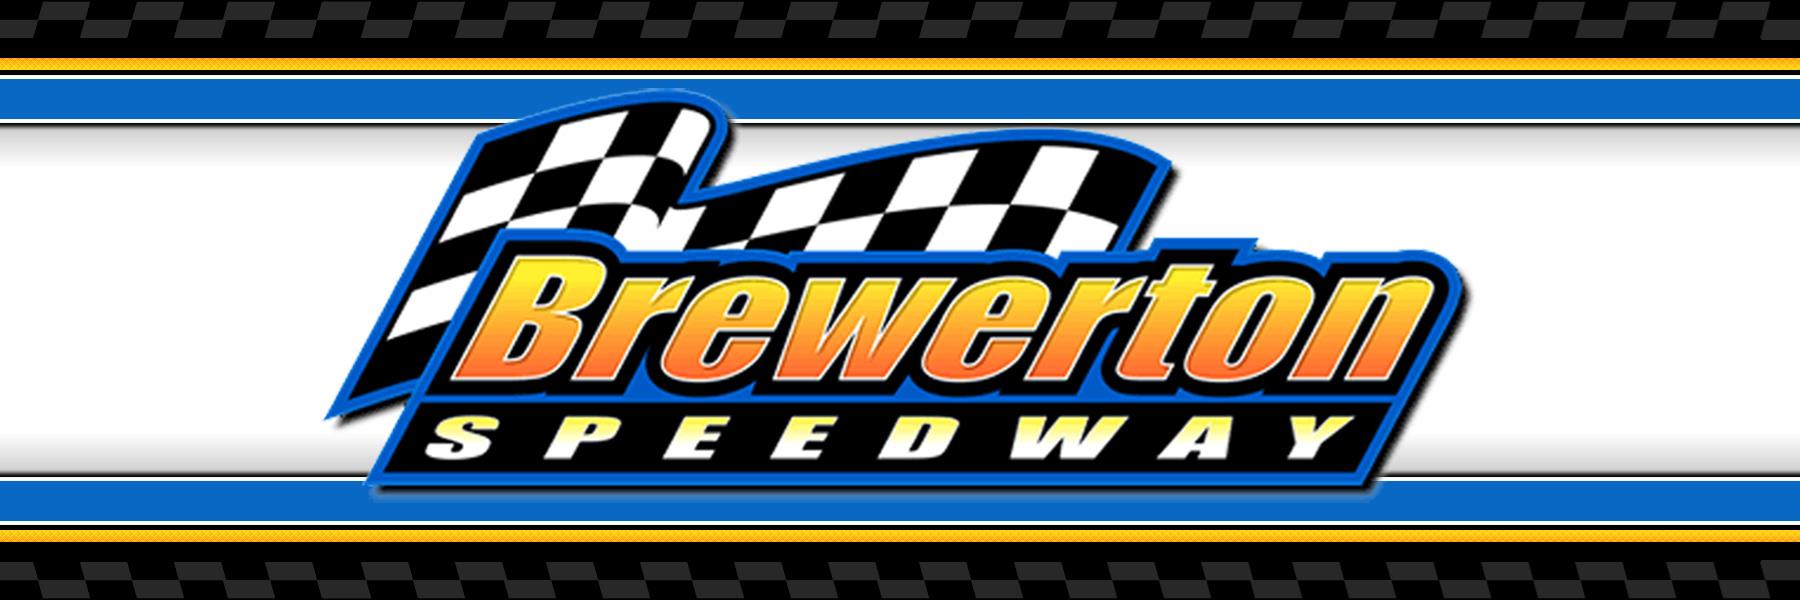 10/5/2022 - Brewerton Speedway